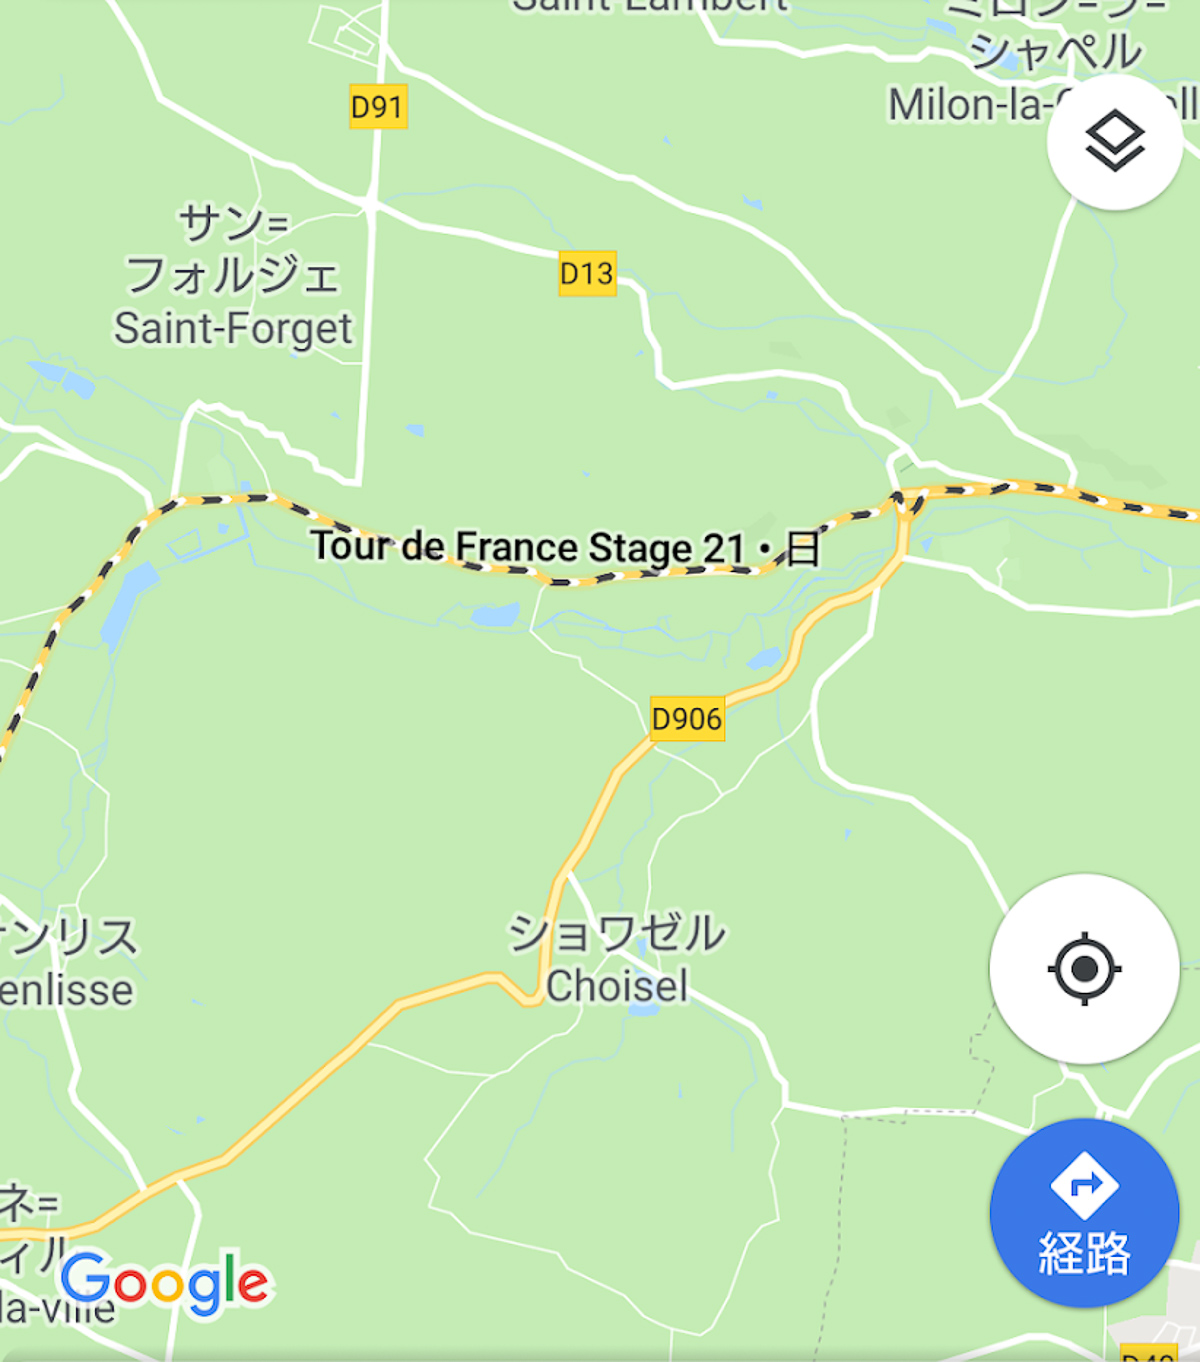 GooglemapにもTour de France 21の文字が出てくるように